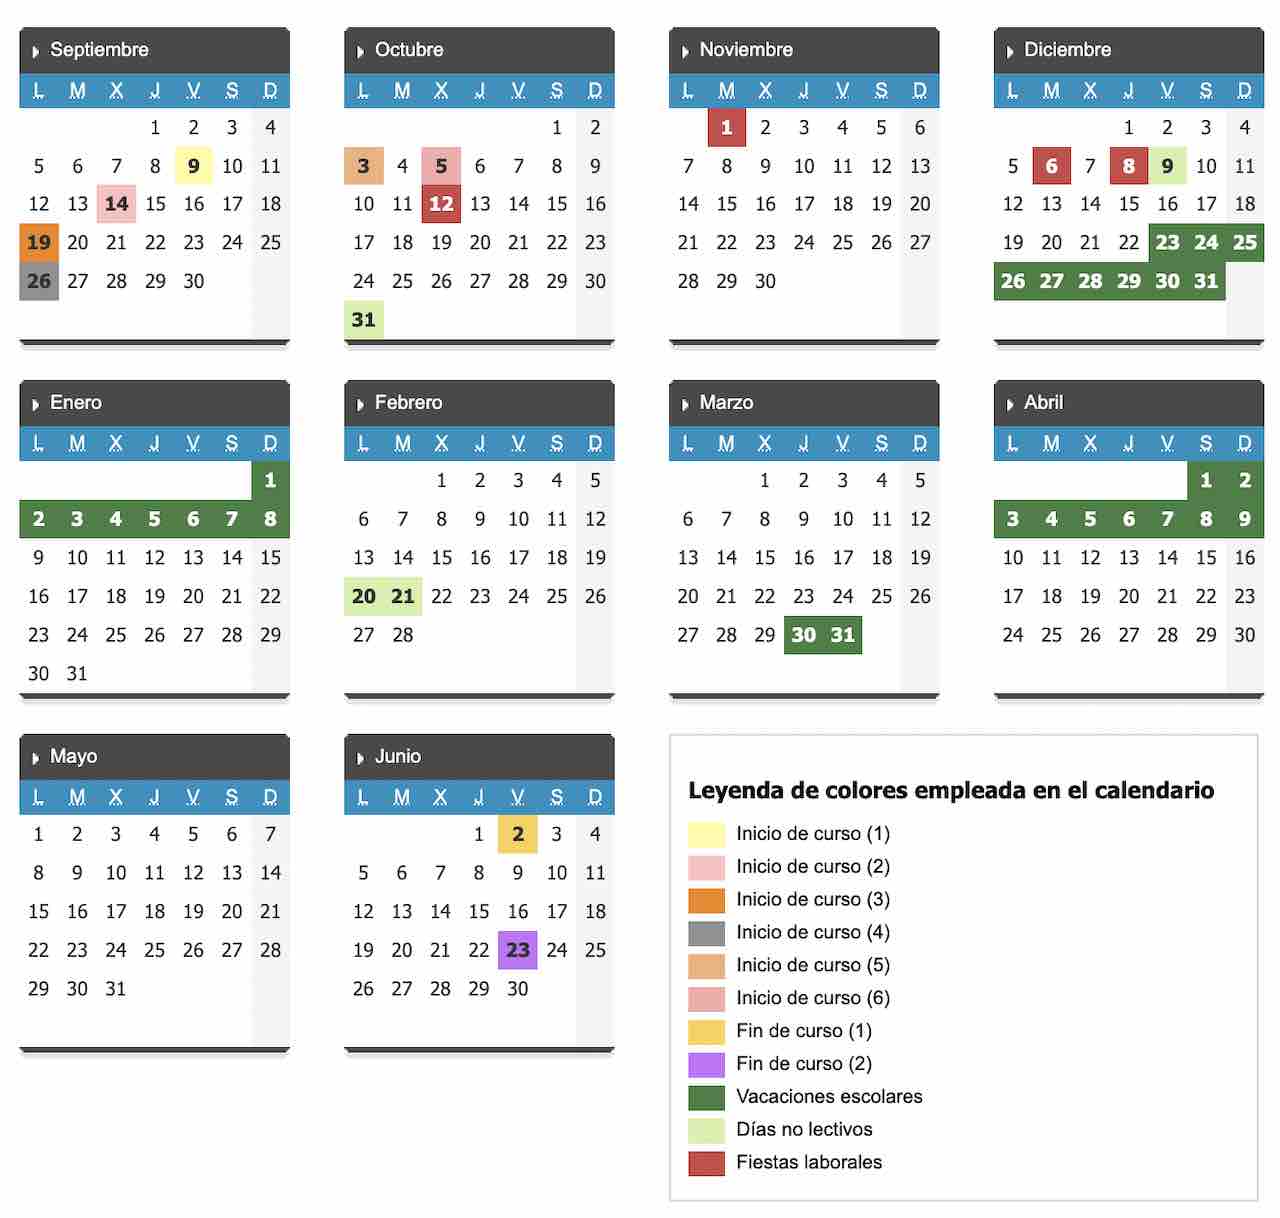 Calendario escolar Castilla y León para el curso 2022-2023